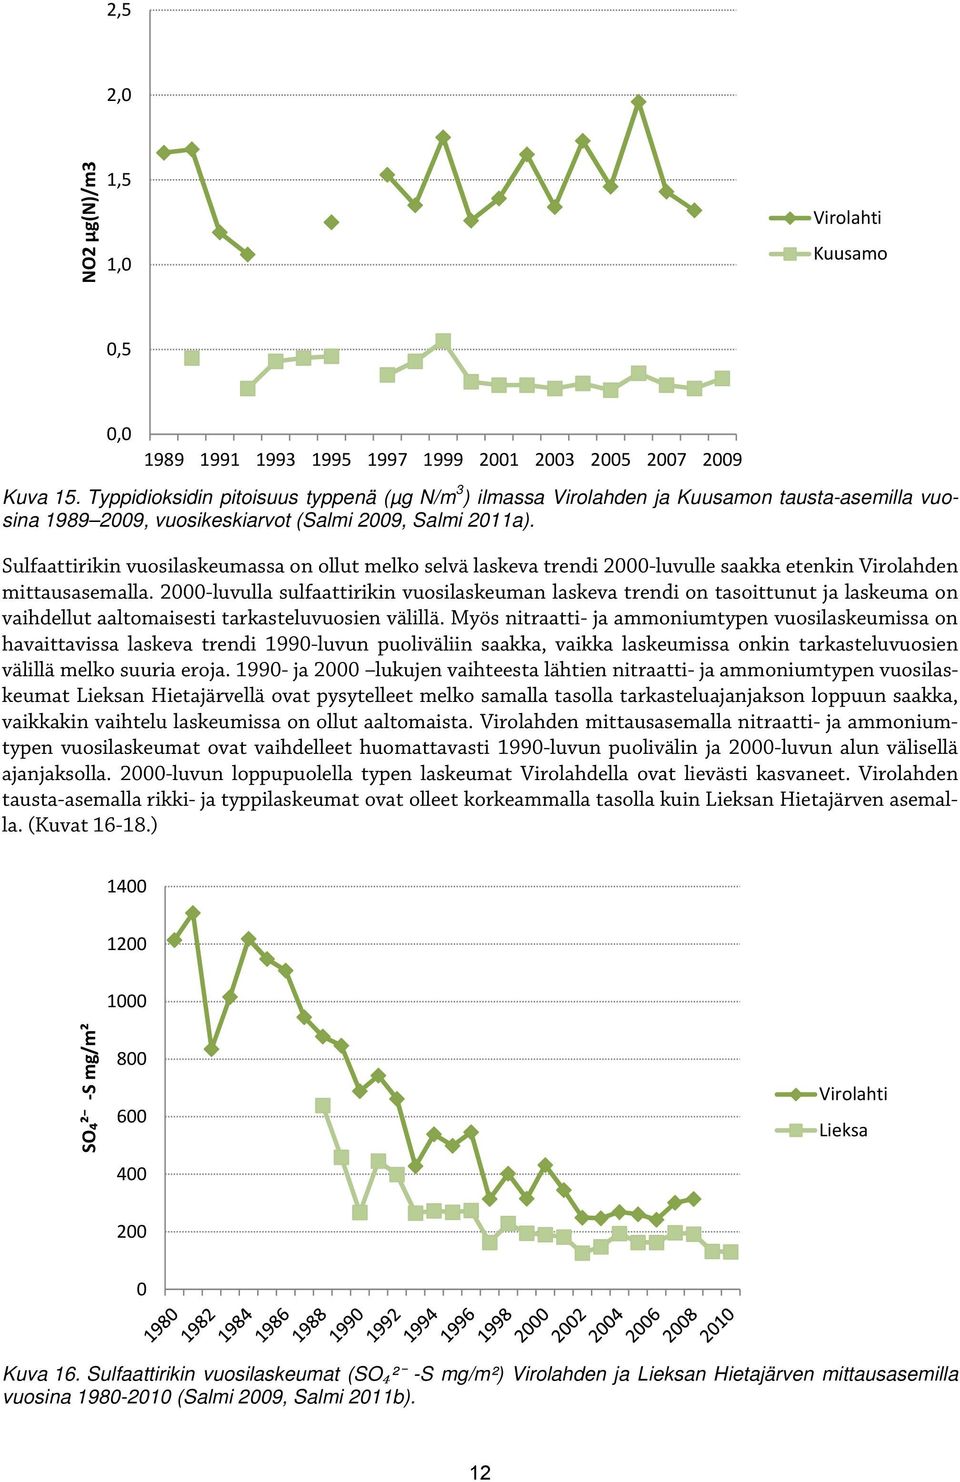 Sulfaattirikin vuosilaskeumassa on ollut melko selvä laskeva trendi 2000-luvulle saakka etenkin Virolahden mittausasemalla.